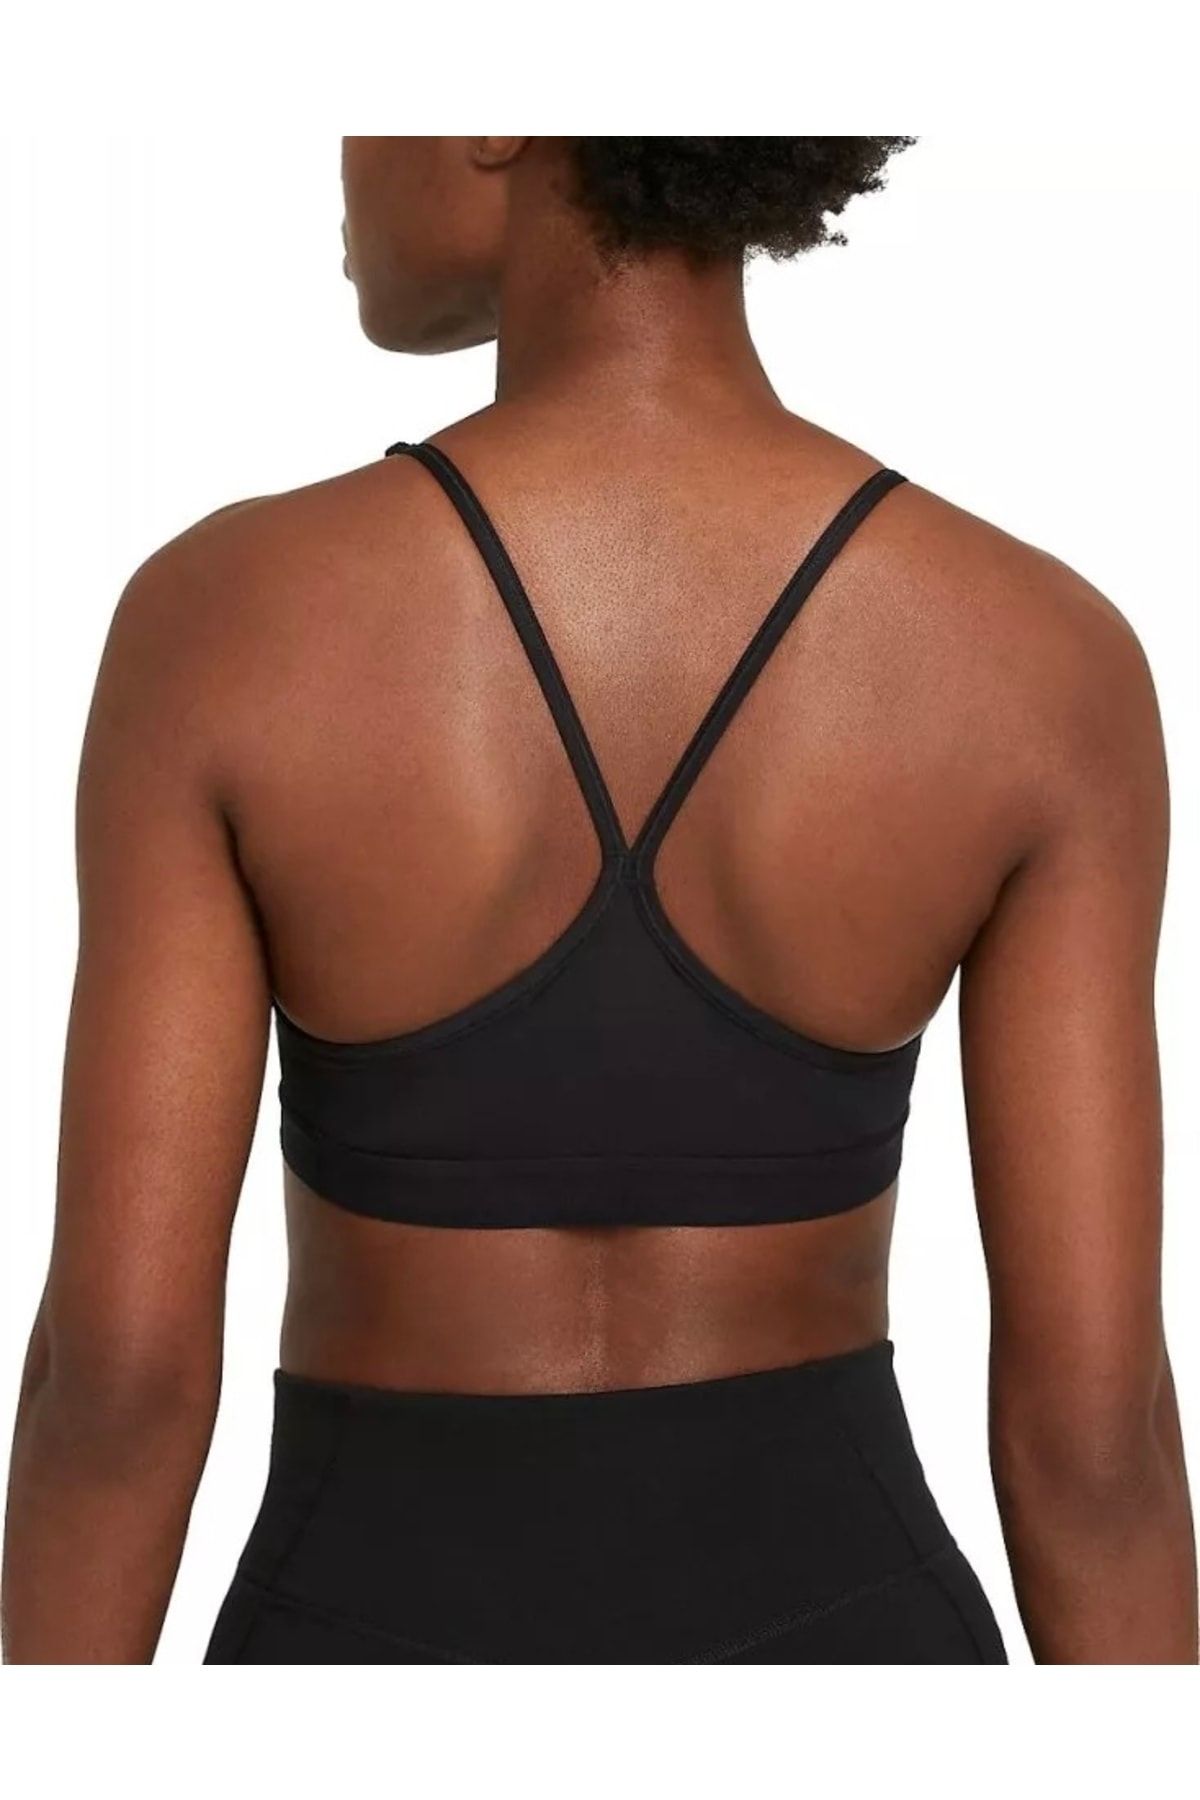 Women's Black Nike Seamless Light Support Bra